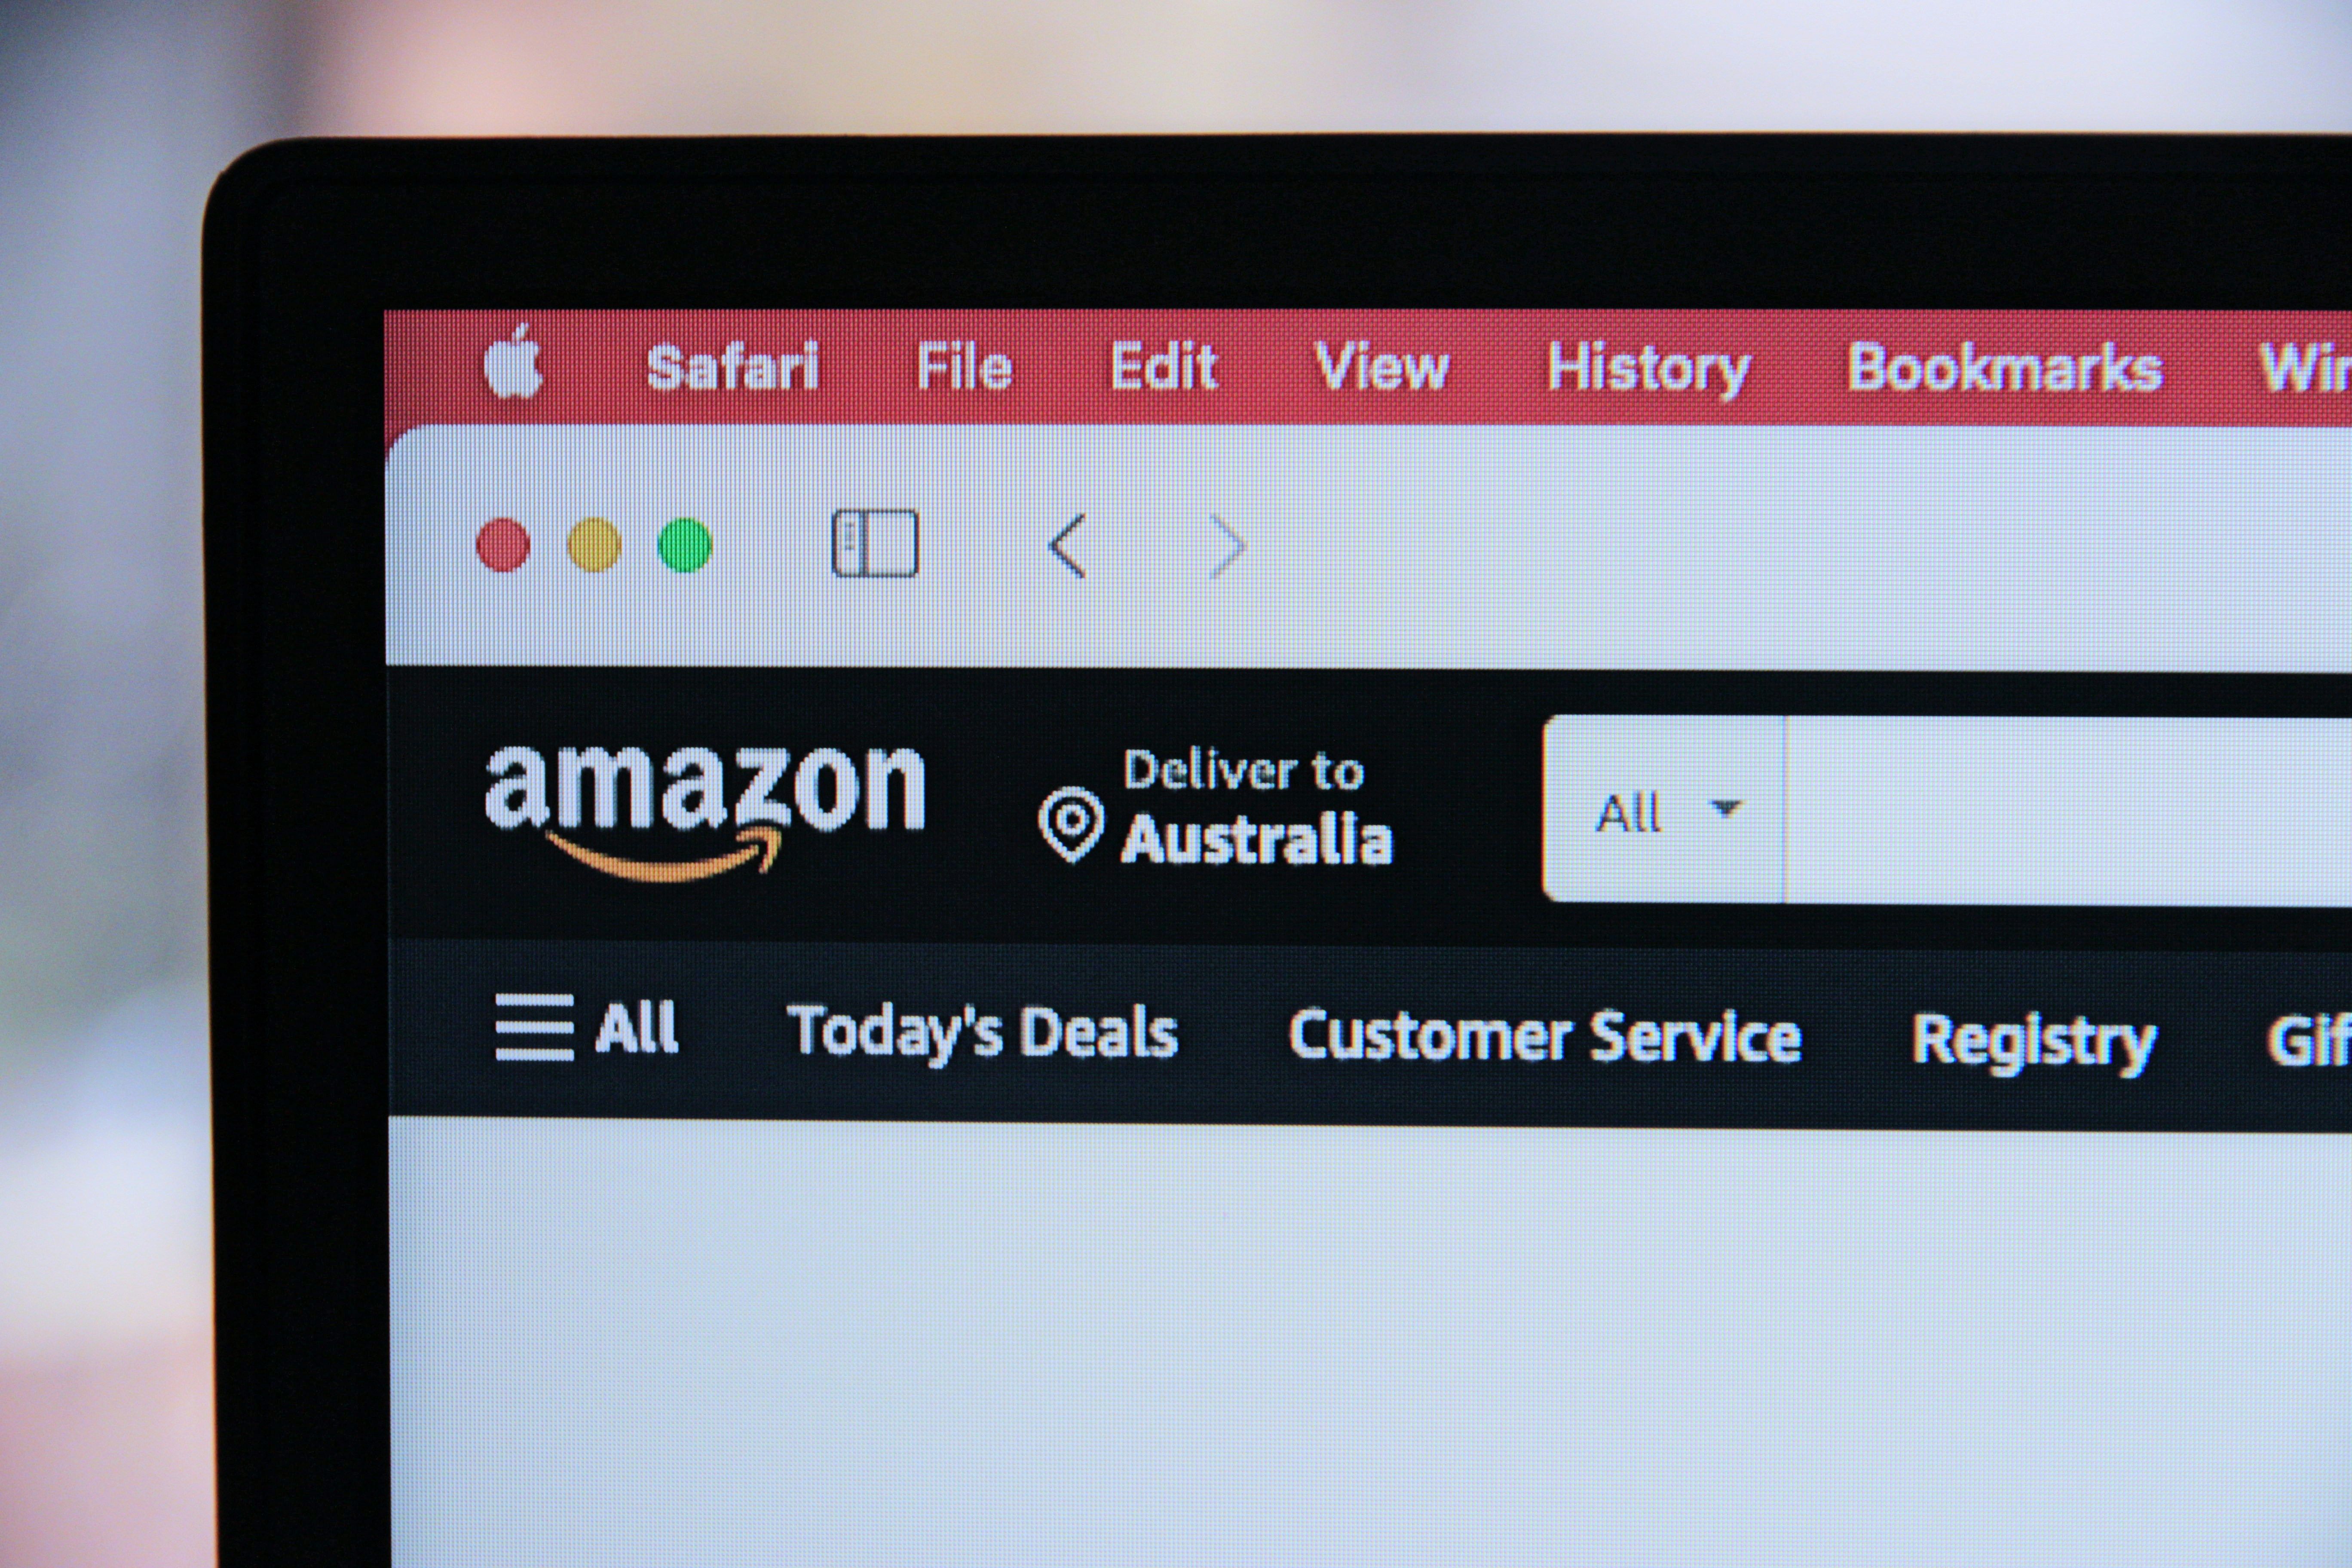 Amazon Product Listing Optimisation